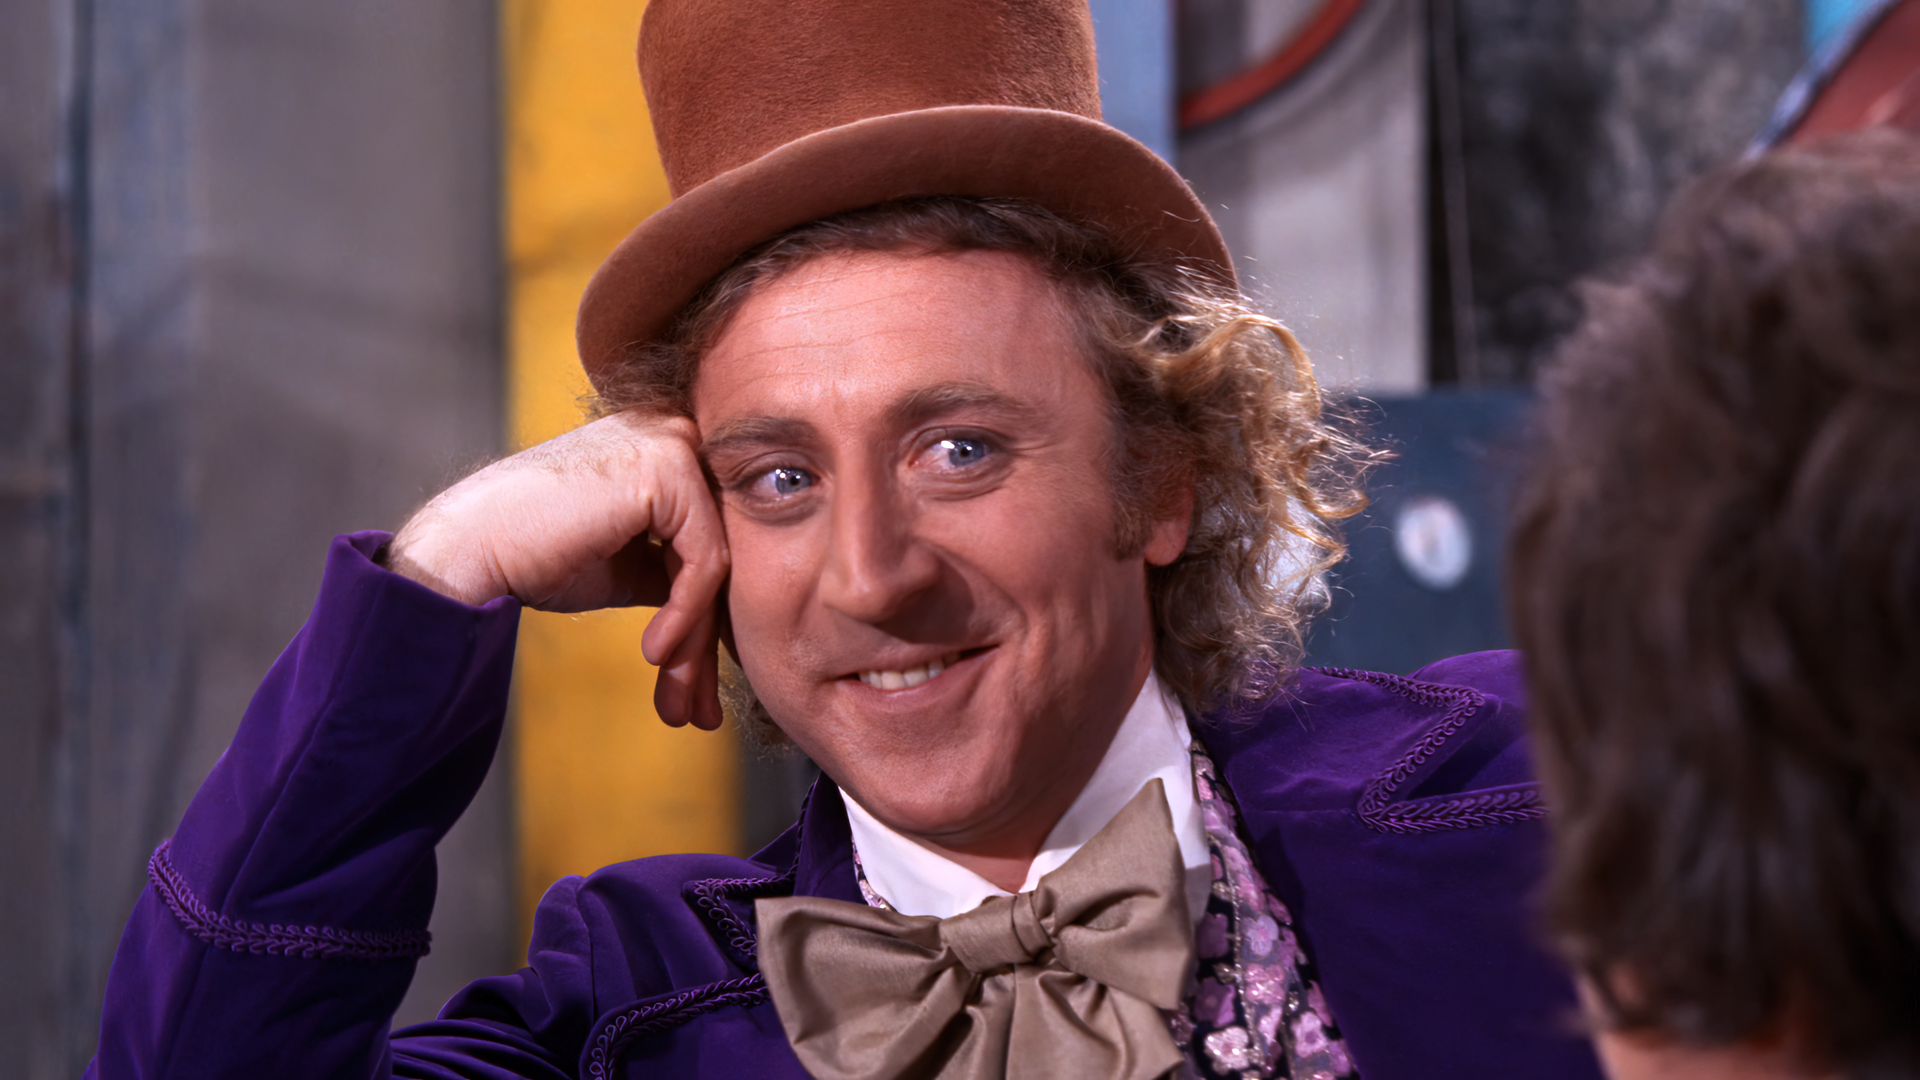 Willy Wonka The Chocolate Factory Movies Film Stills Willy Wonka Gene Wilder Actor Men Hat Memes 1920x1080